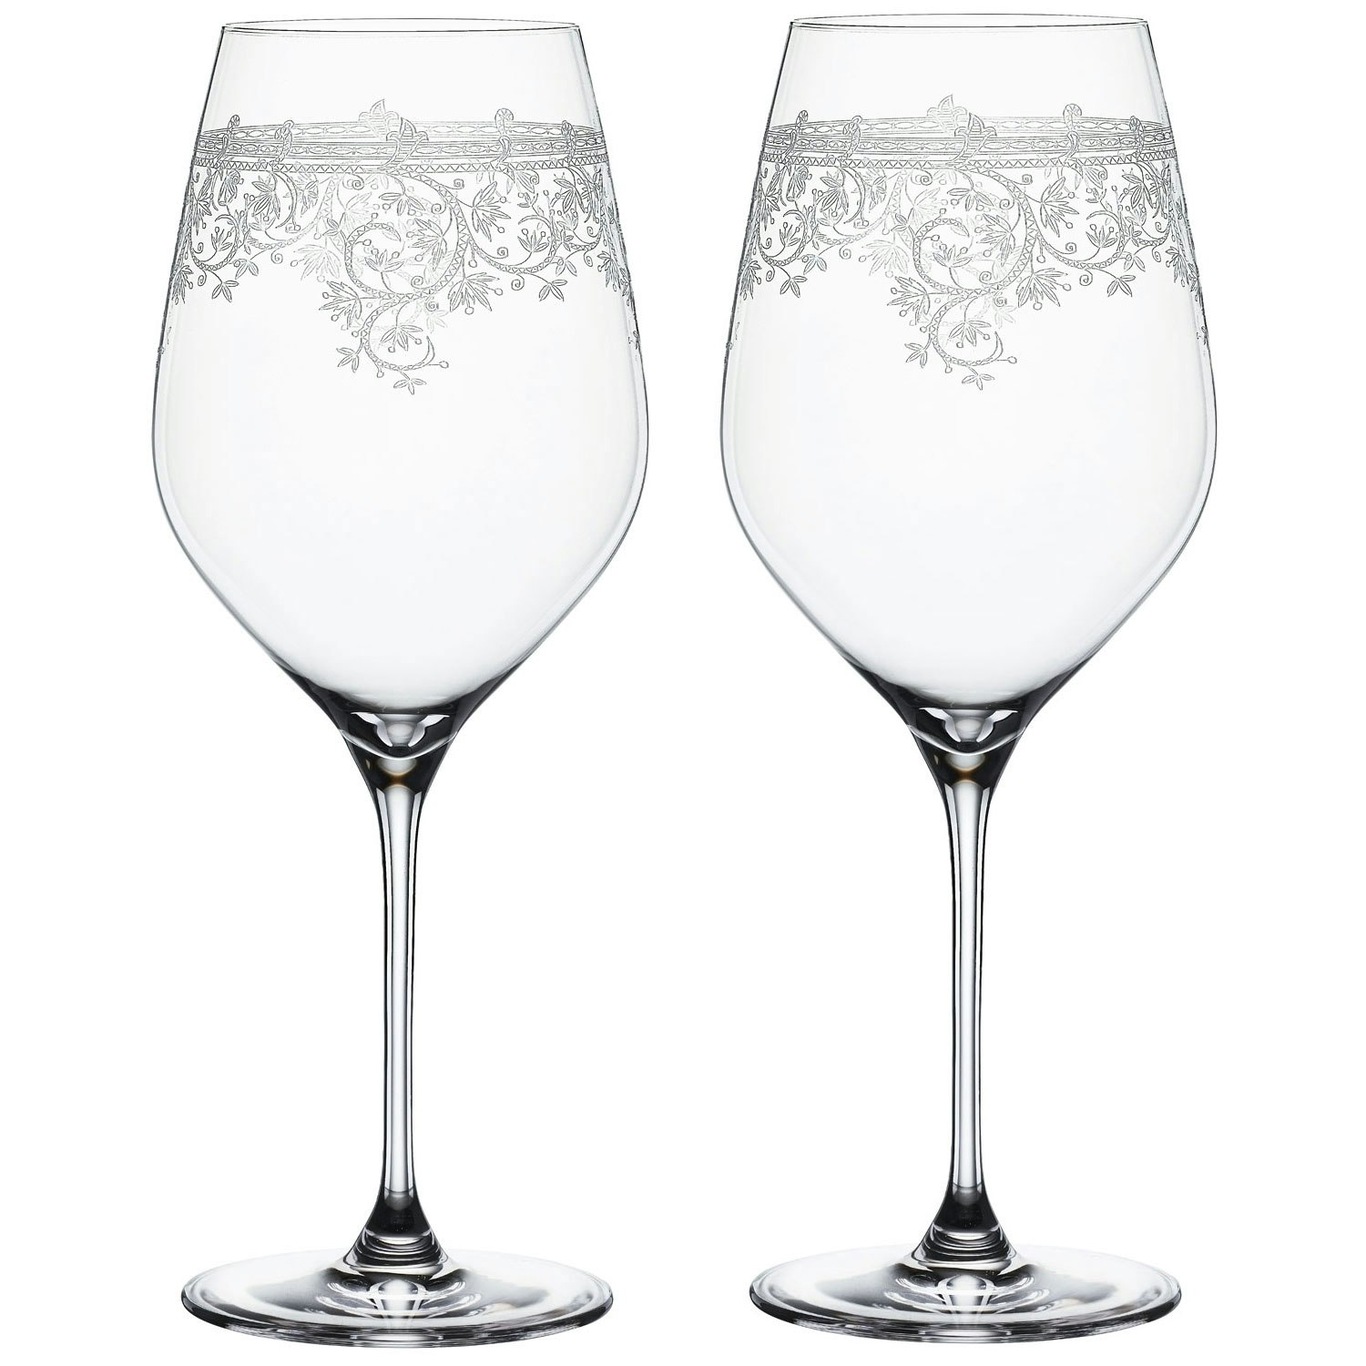 https://royaldesign.com/image/2/spiegelau-arabesque-bordeaux-wine-glass-2-pack-81-cl-0?w=800&quality=80